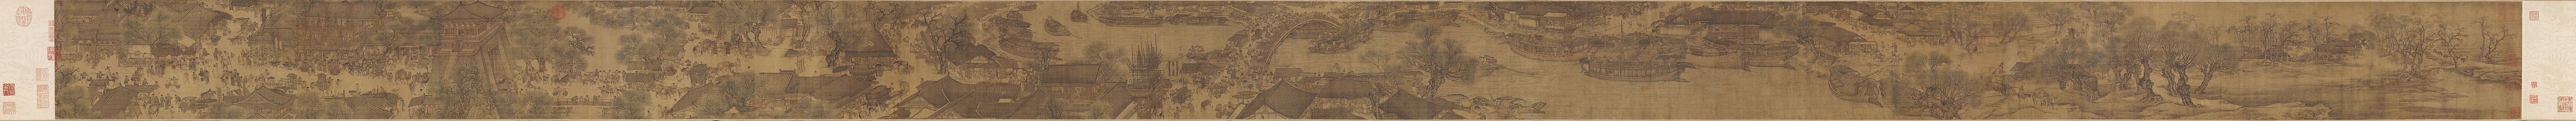 Duž rijeke tijekom Qingming festivala, izvorna verzija iz 12. st.